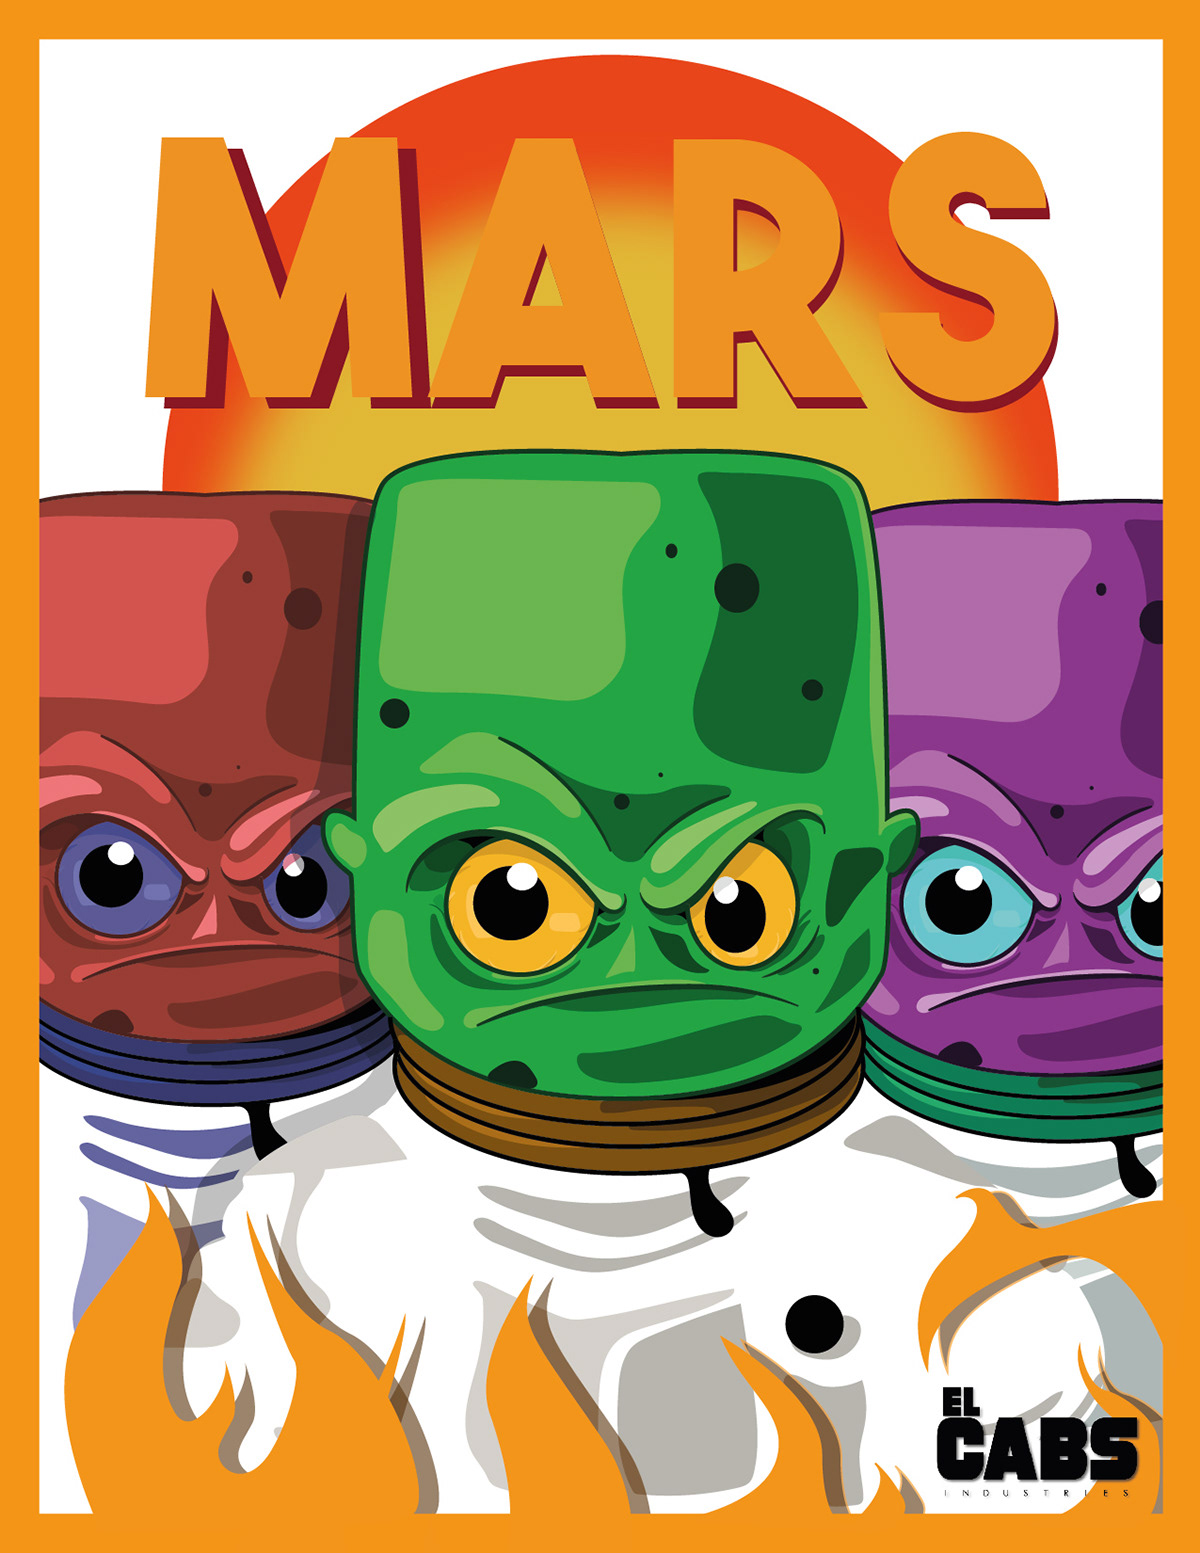 ovnis Extraterrestres color Marciano Marte ufologia cartoon ilustracion